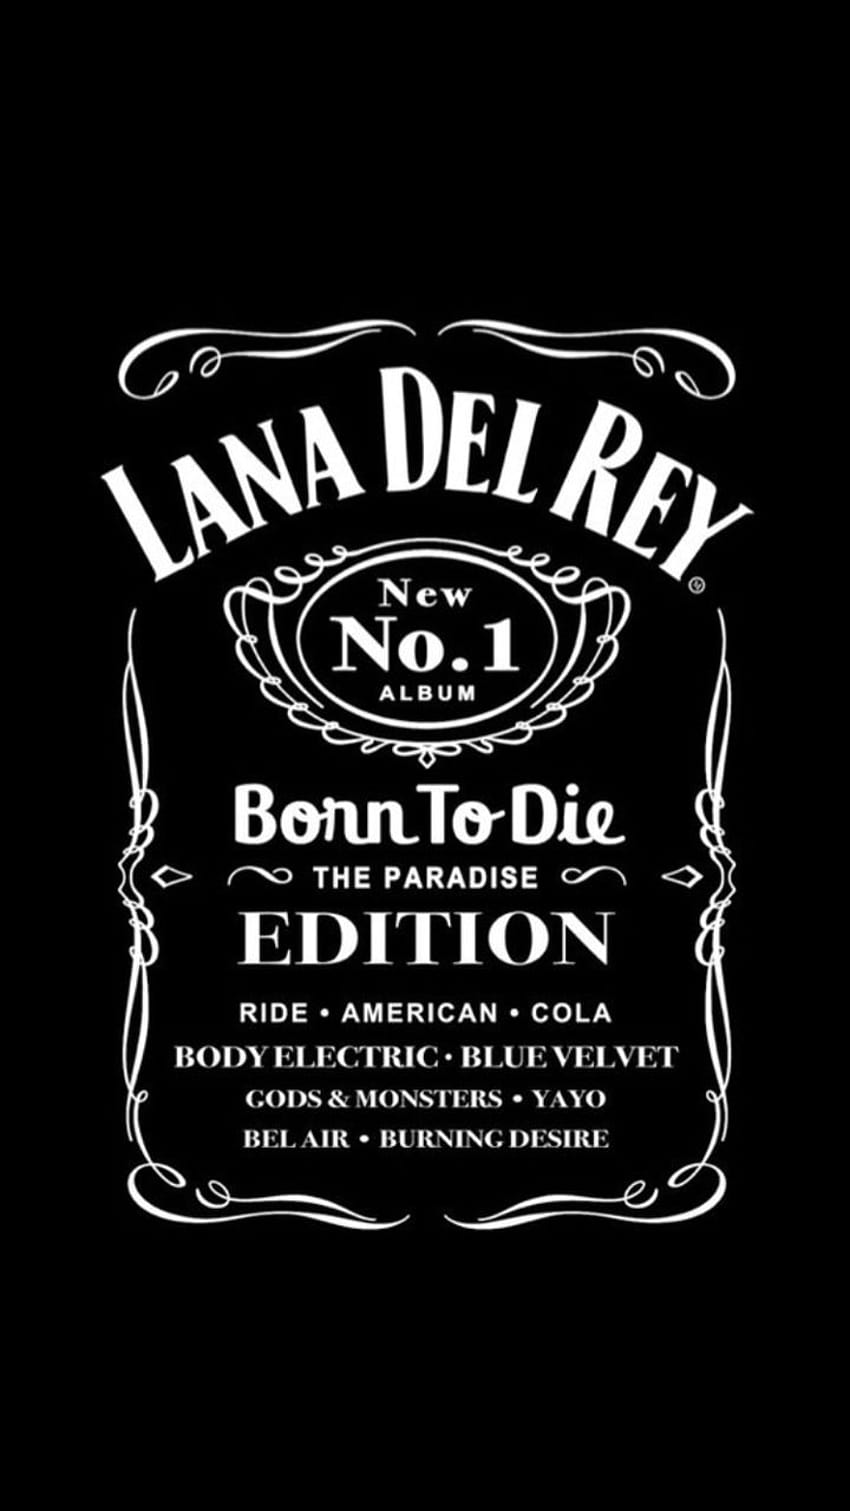 Wiski Lana Del Rey, lahir untuk mati wallpaper ponsel HD